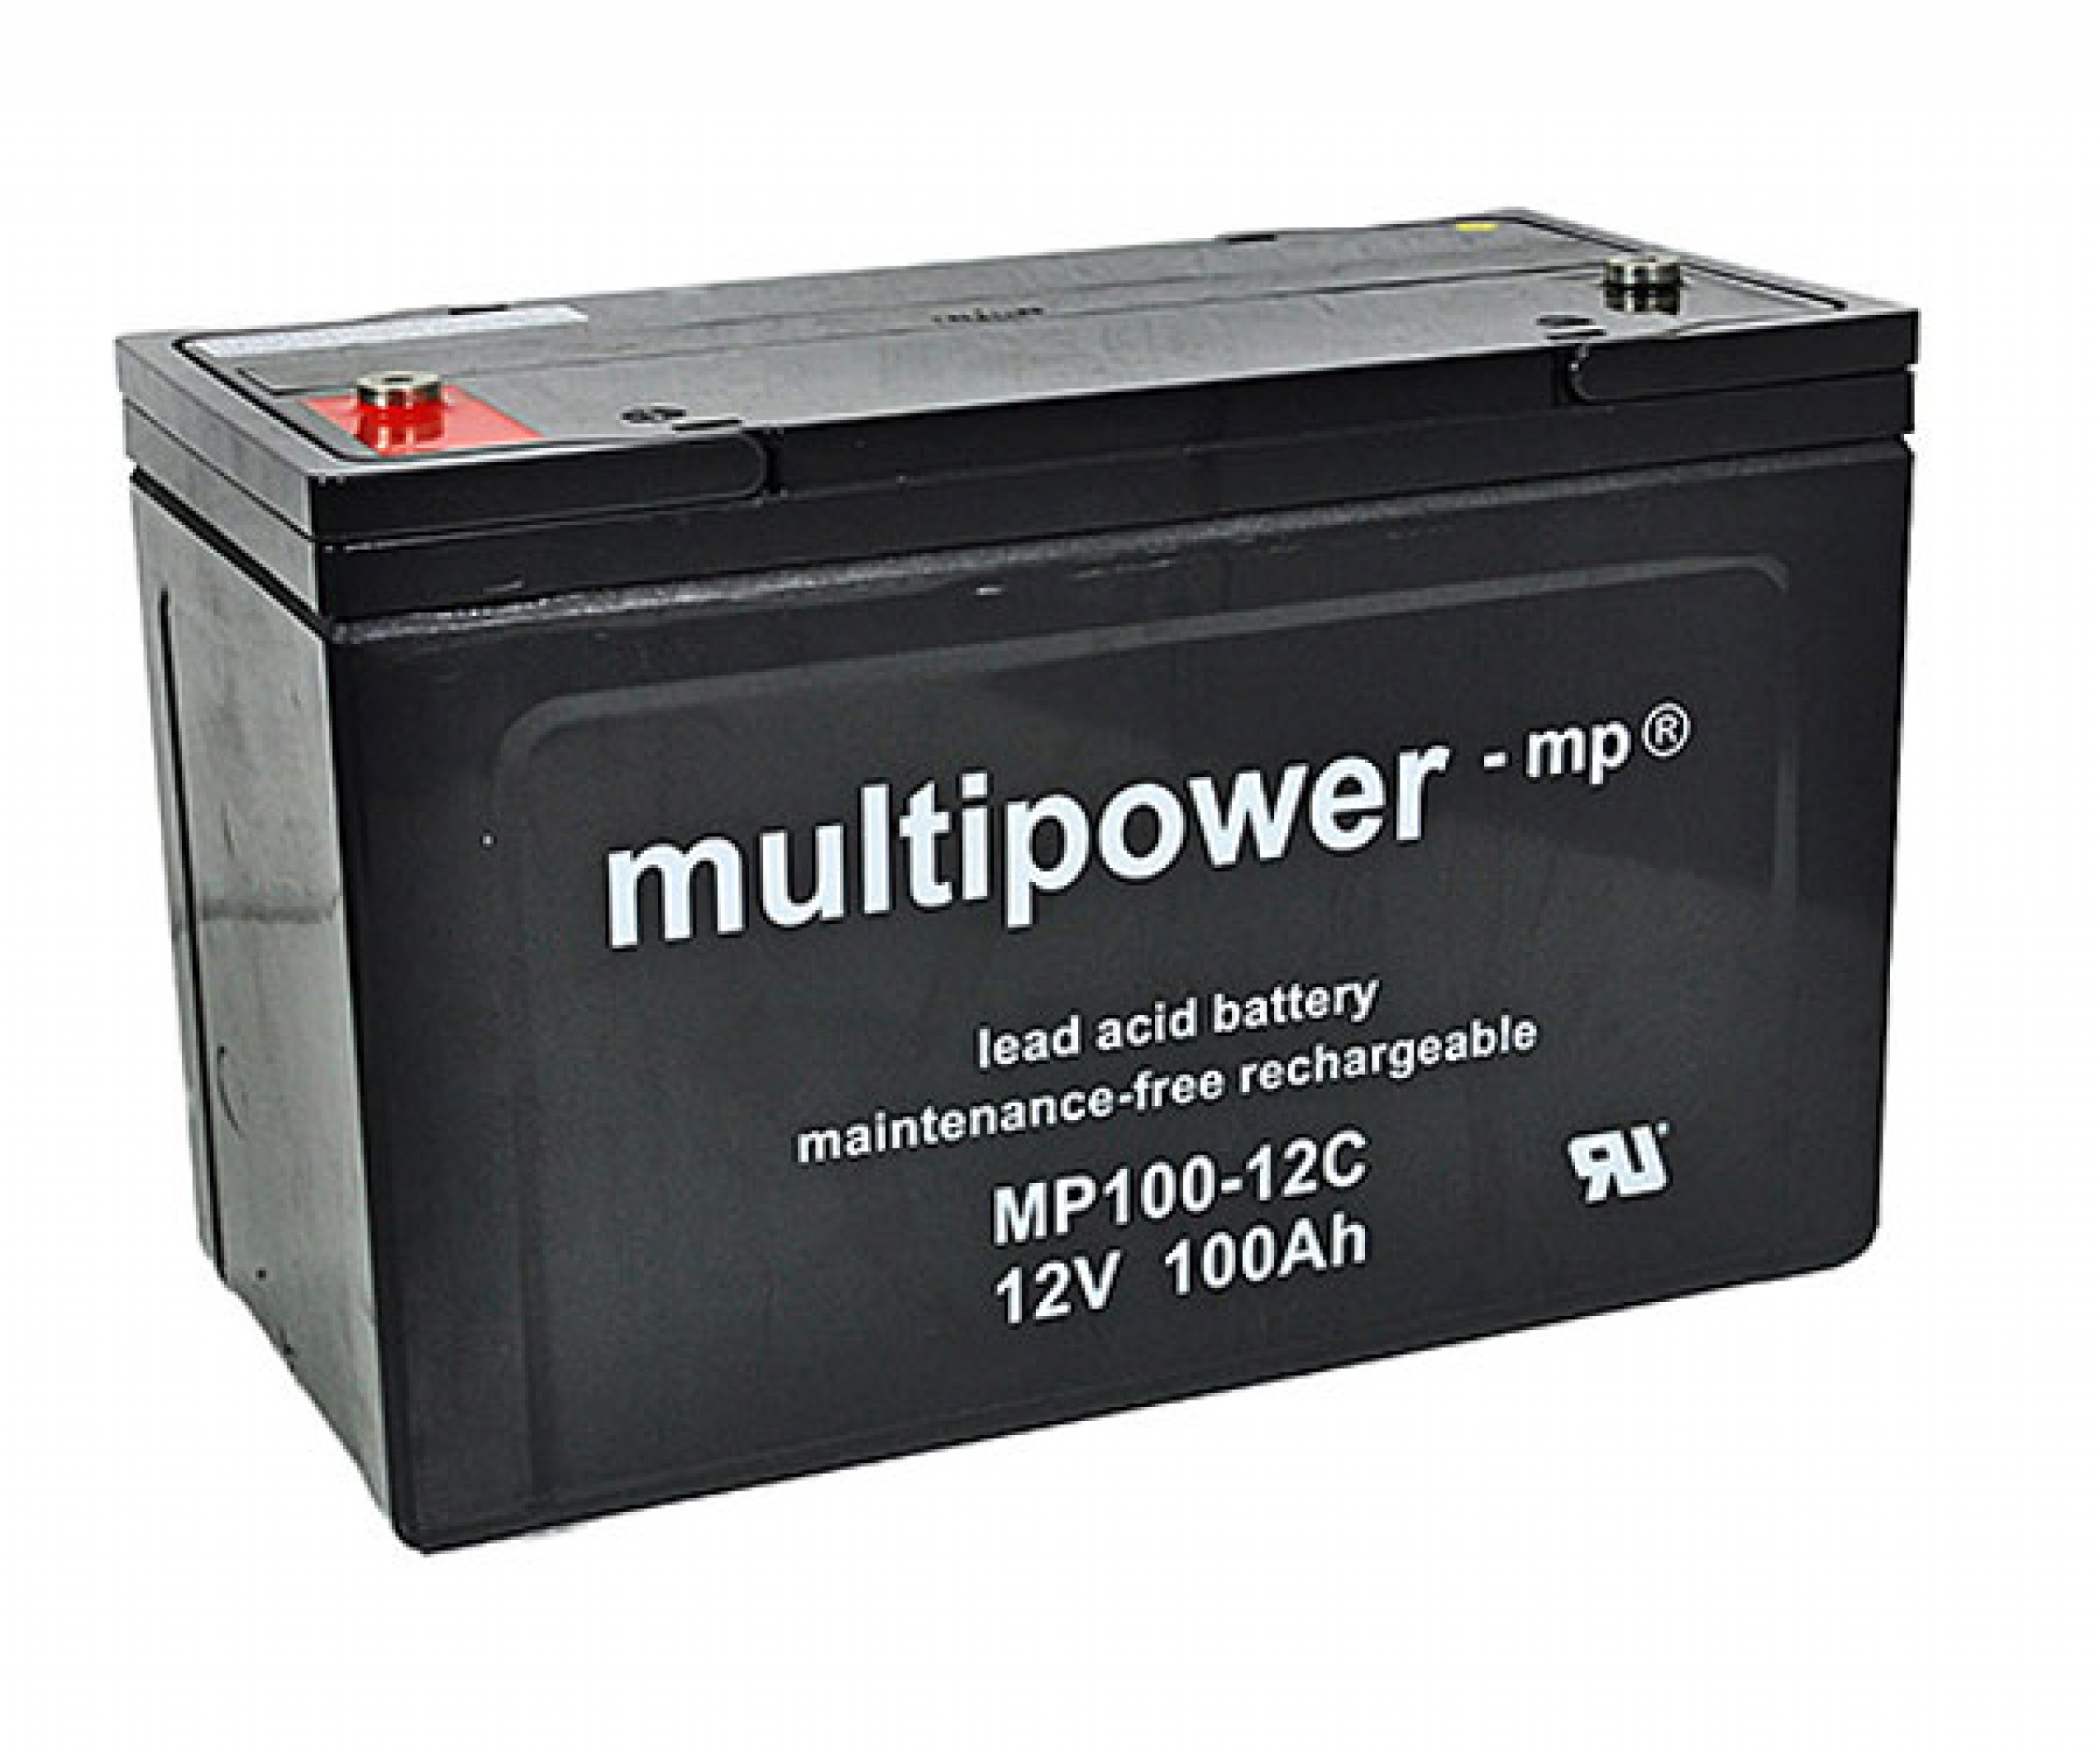 MP100-12C